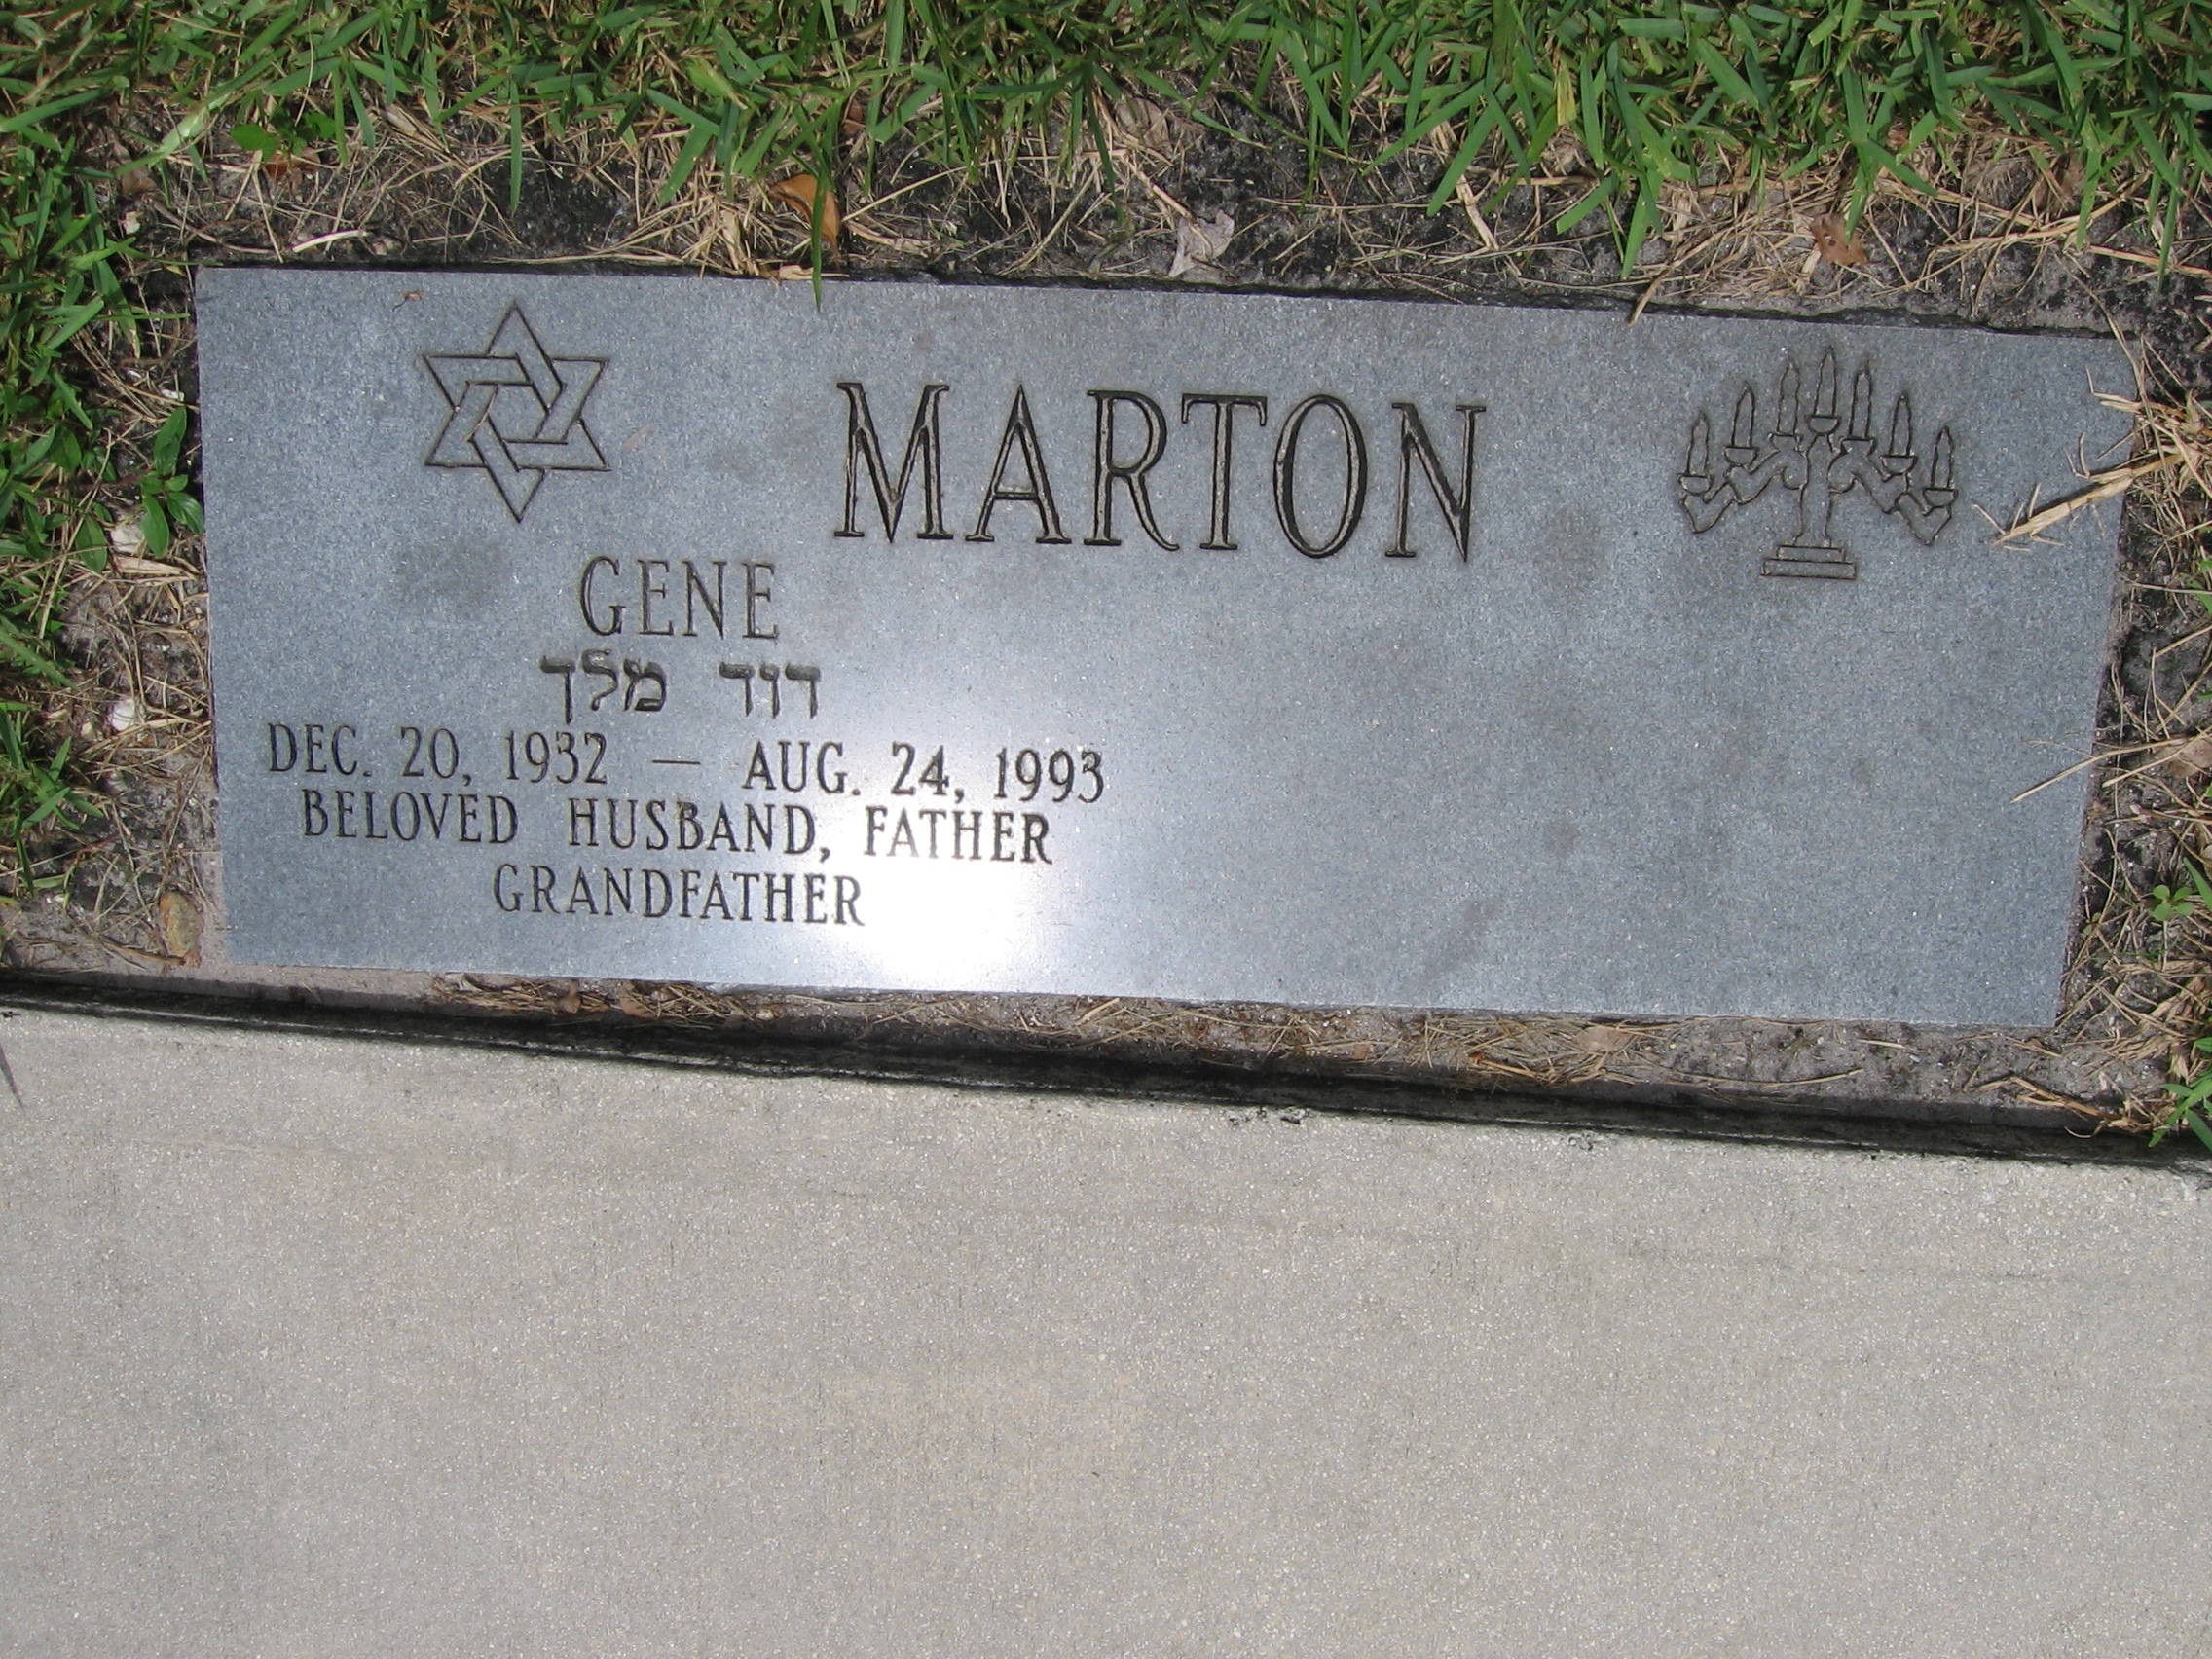 Gene Marton